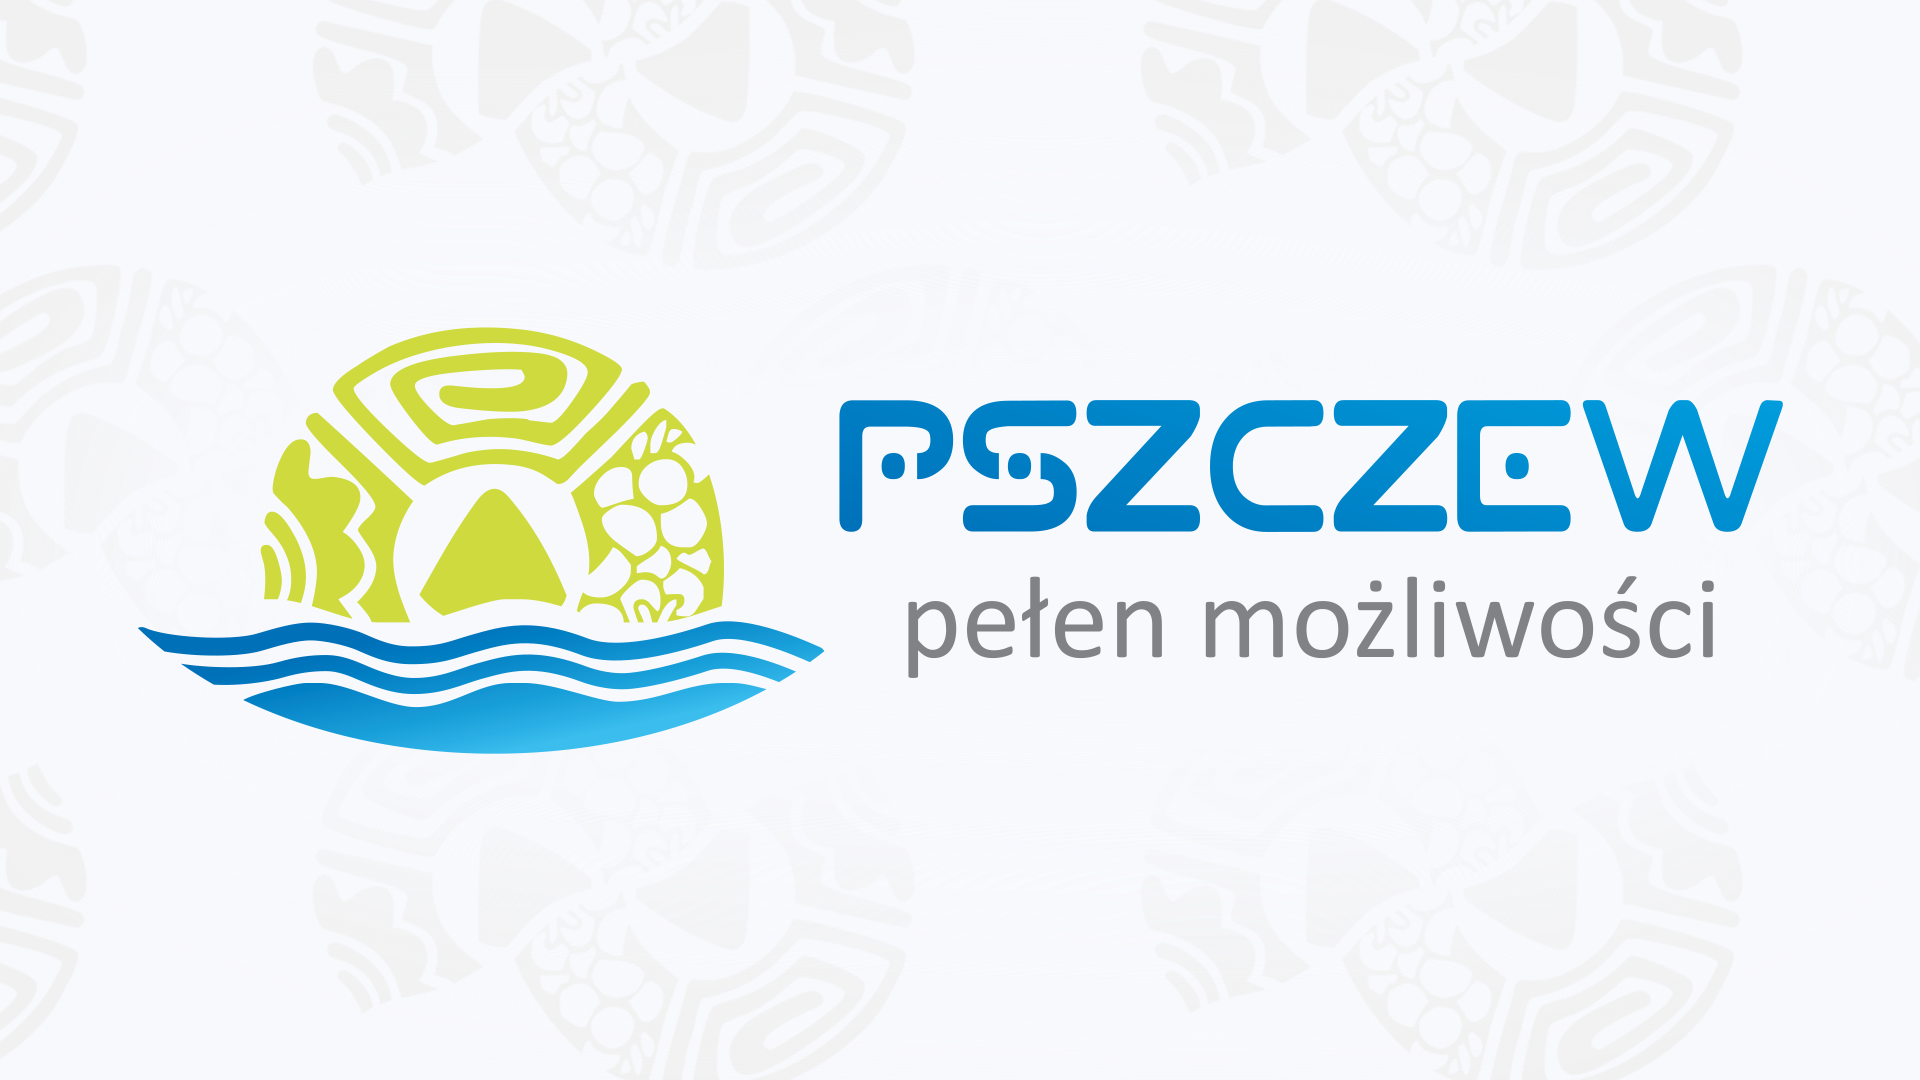 OBWIESZCZENIE WÓJTA GMINY PSZCZEW o ponownym wyłożeniu do publicznego wglądu miejscowego planu zagospodarowania przestrzennego gminy Pszczew, dla działki o nr ewid. 1309, położonej w obrębie Pszczew.